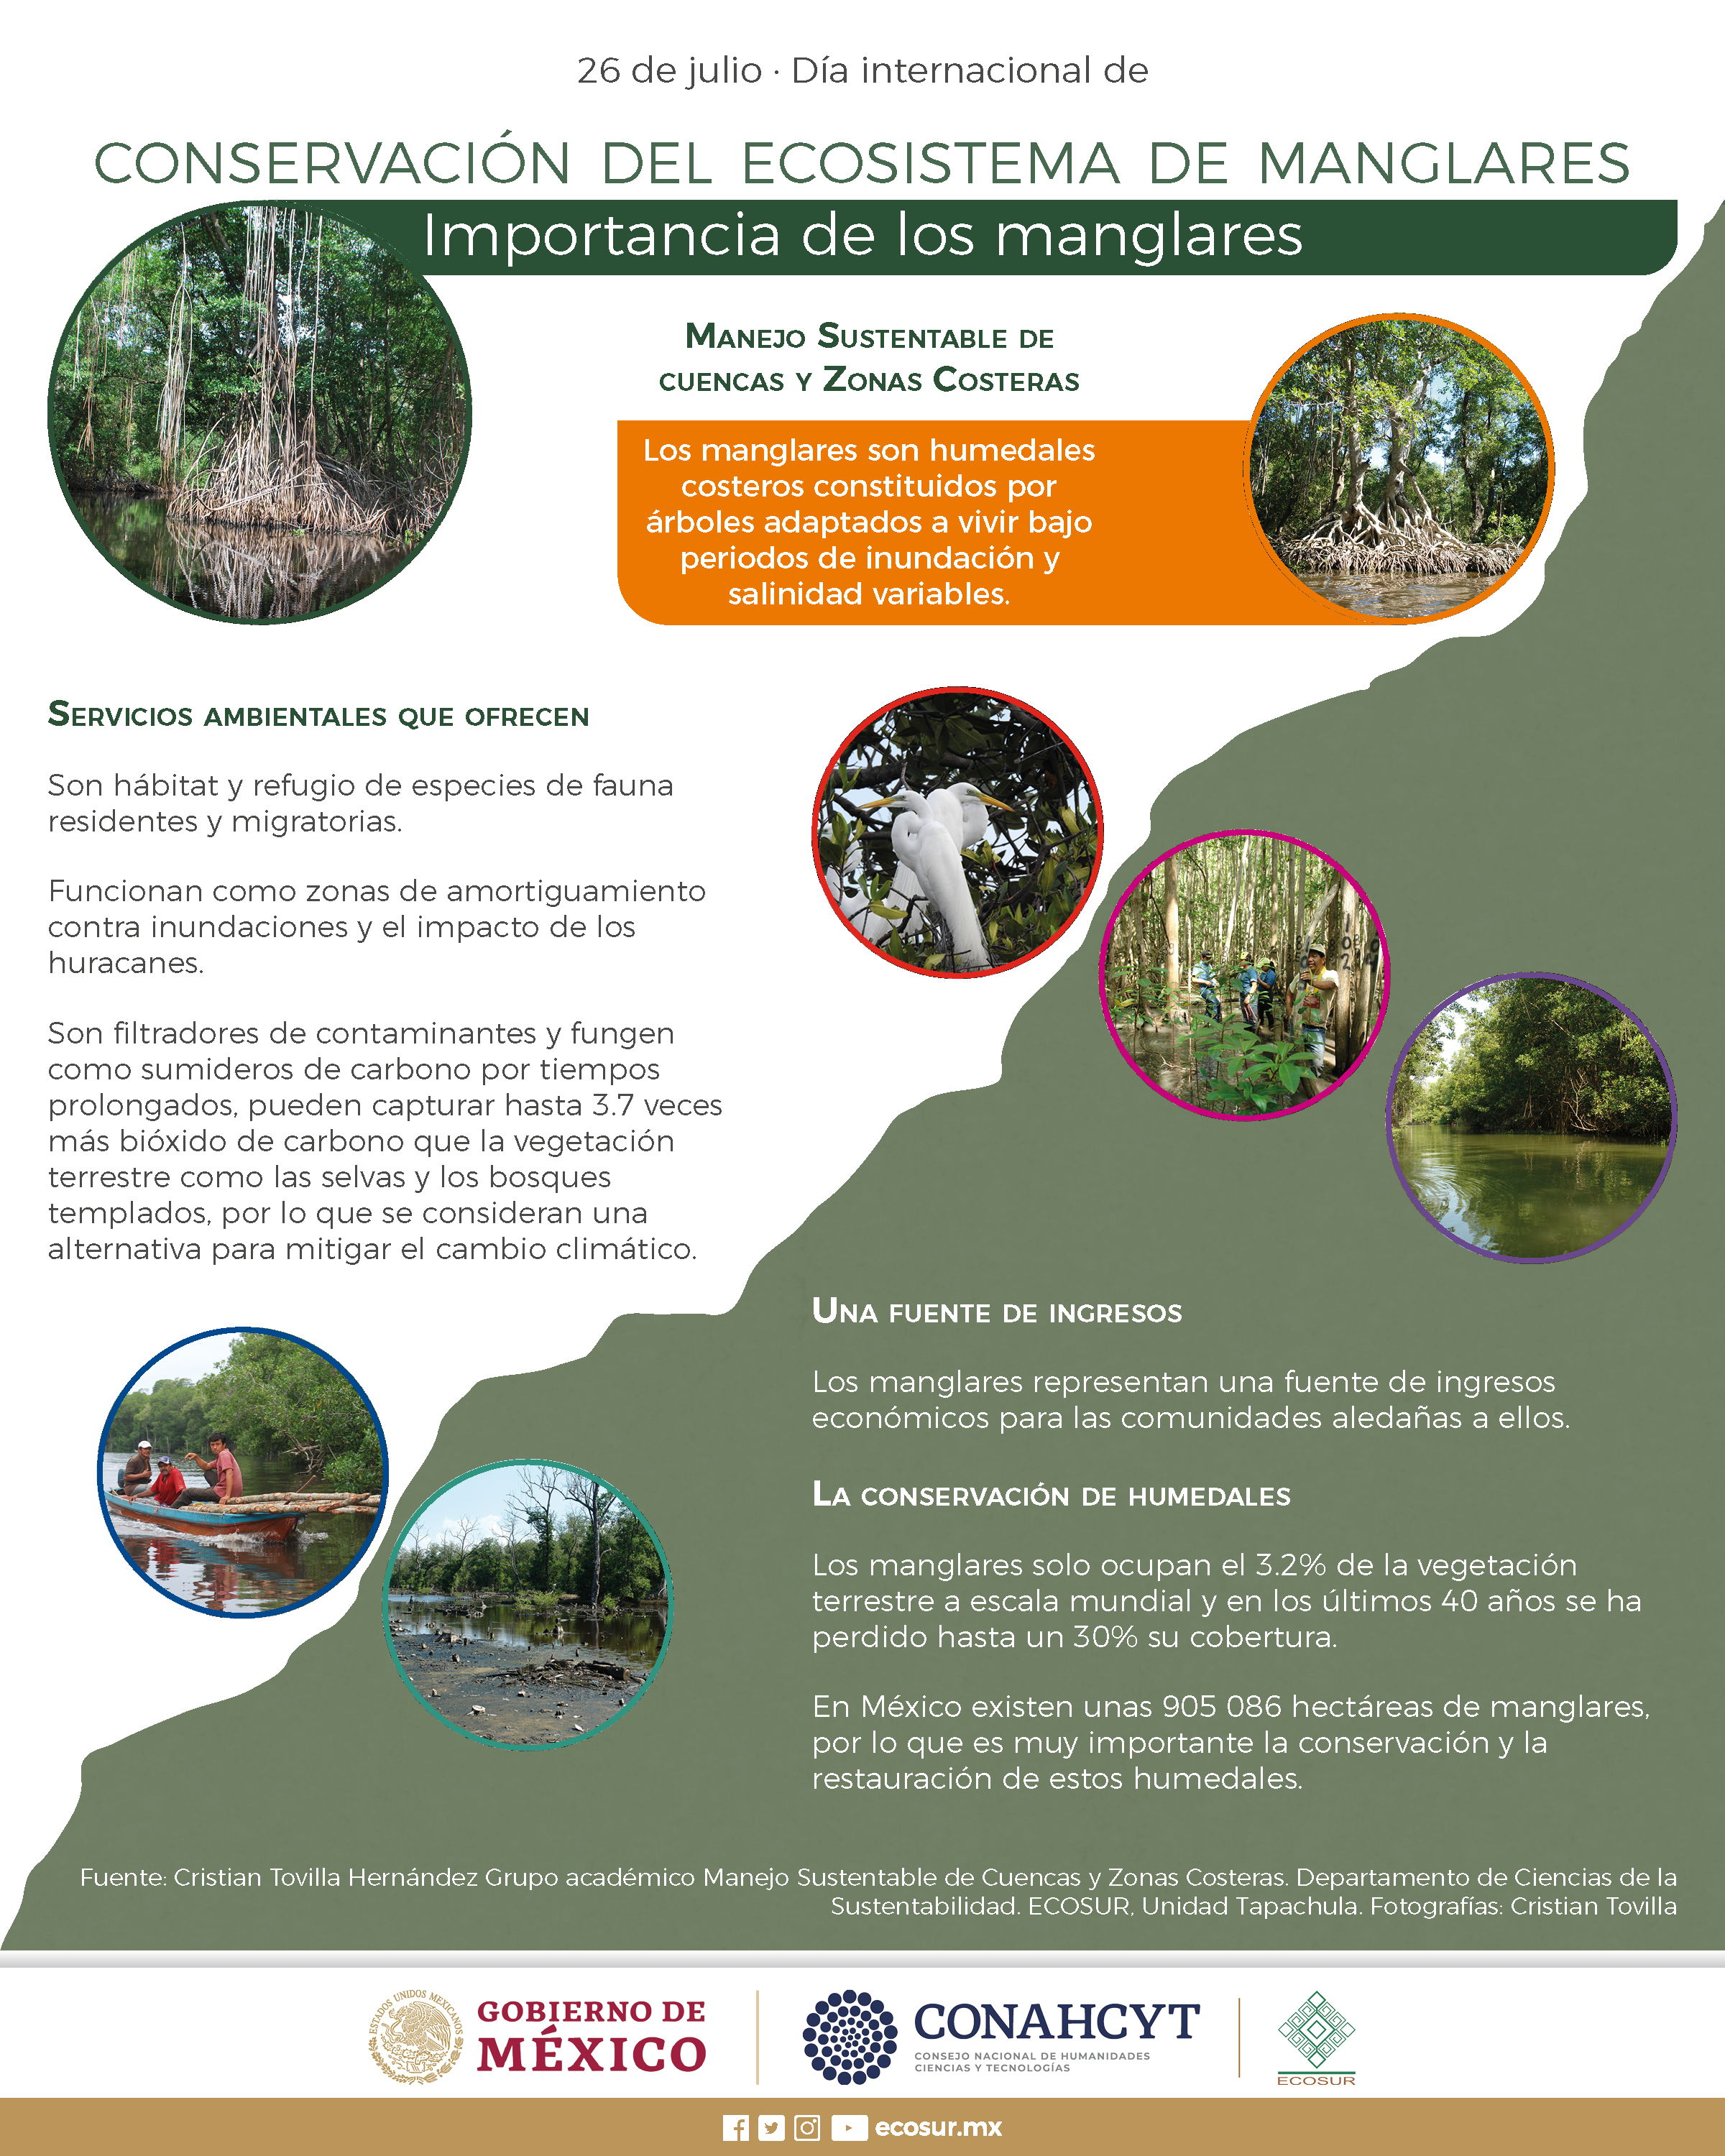 26 de julio, Día internacional de conservación del ecosistema de manglares